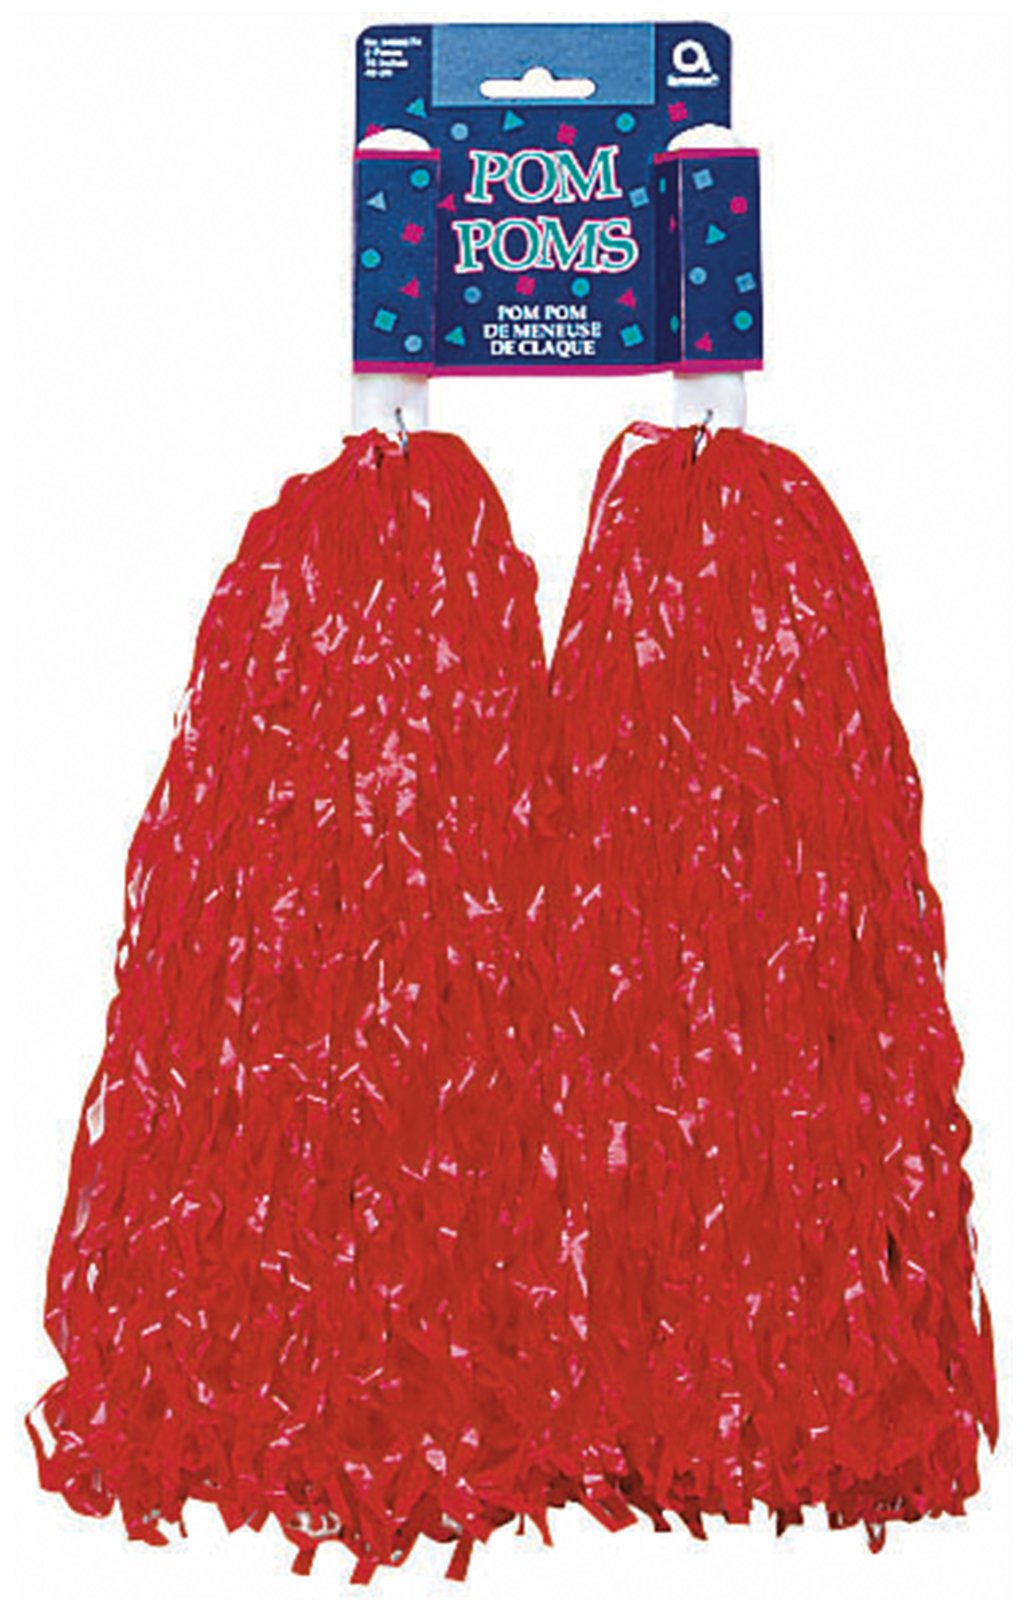 Plastic Pom Poms - Red (2) - Click Image to Close